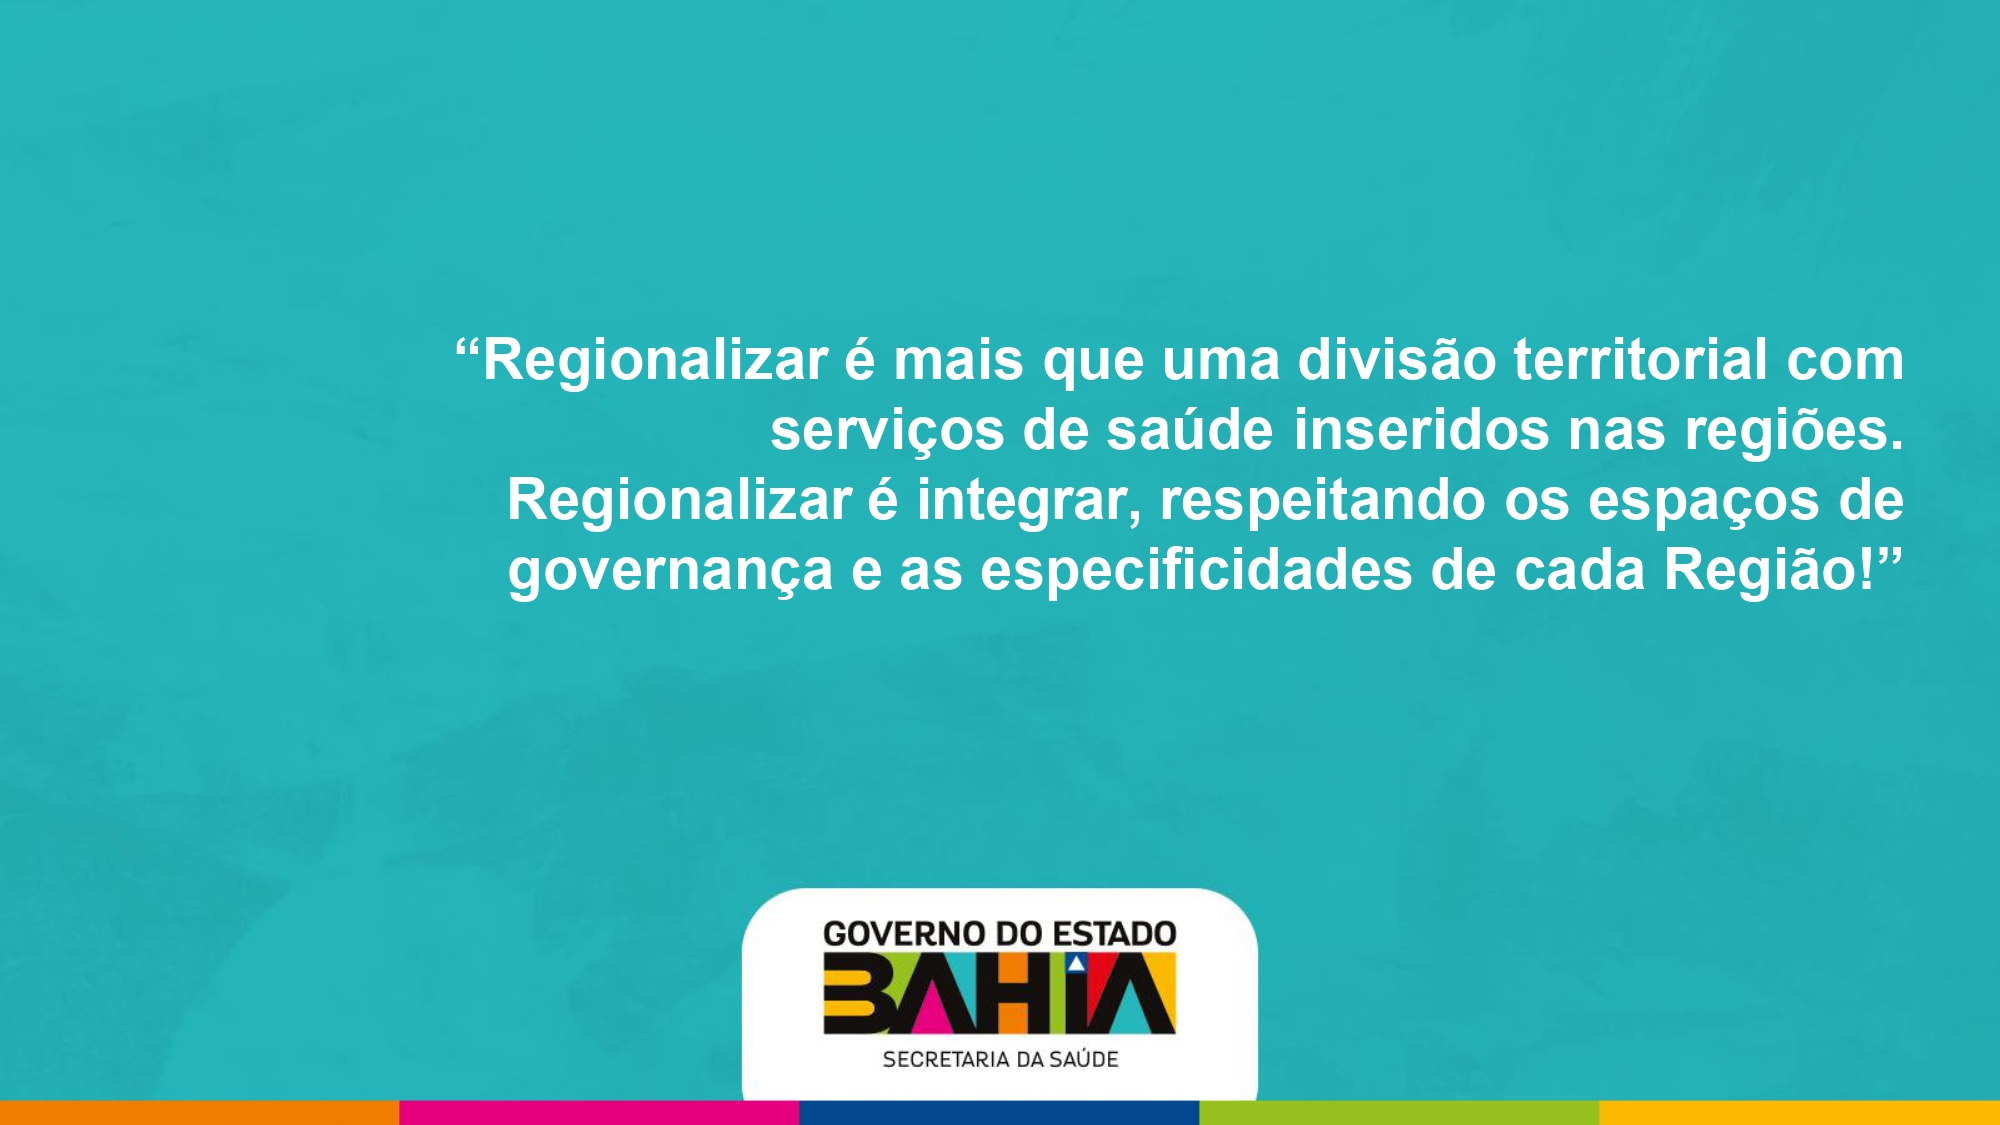 Apresentação de Roberta Sampaio, Coordenadora Executiva de Fortalecimento do SUS da Secretaria da Saúde do Estado da Bahia, no seminário Desafios da regionalização da política de saúde no Brasil: obstáculos e alternativas.